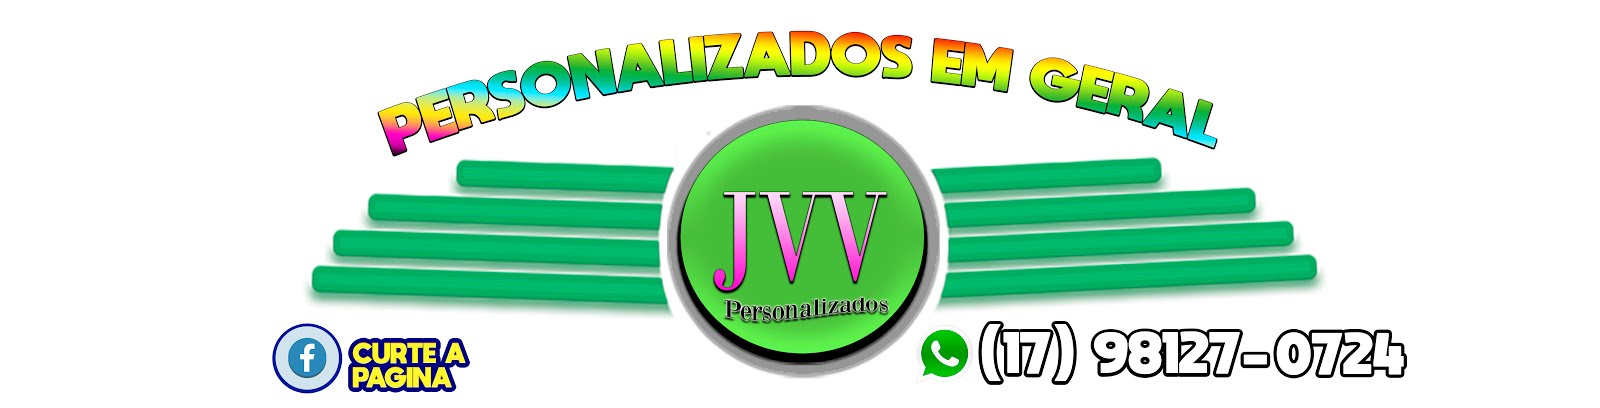 JVV Personalizados em Barretos 